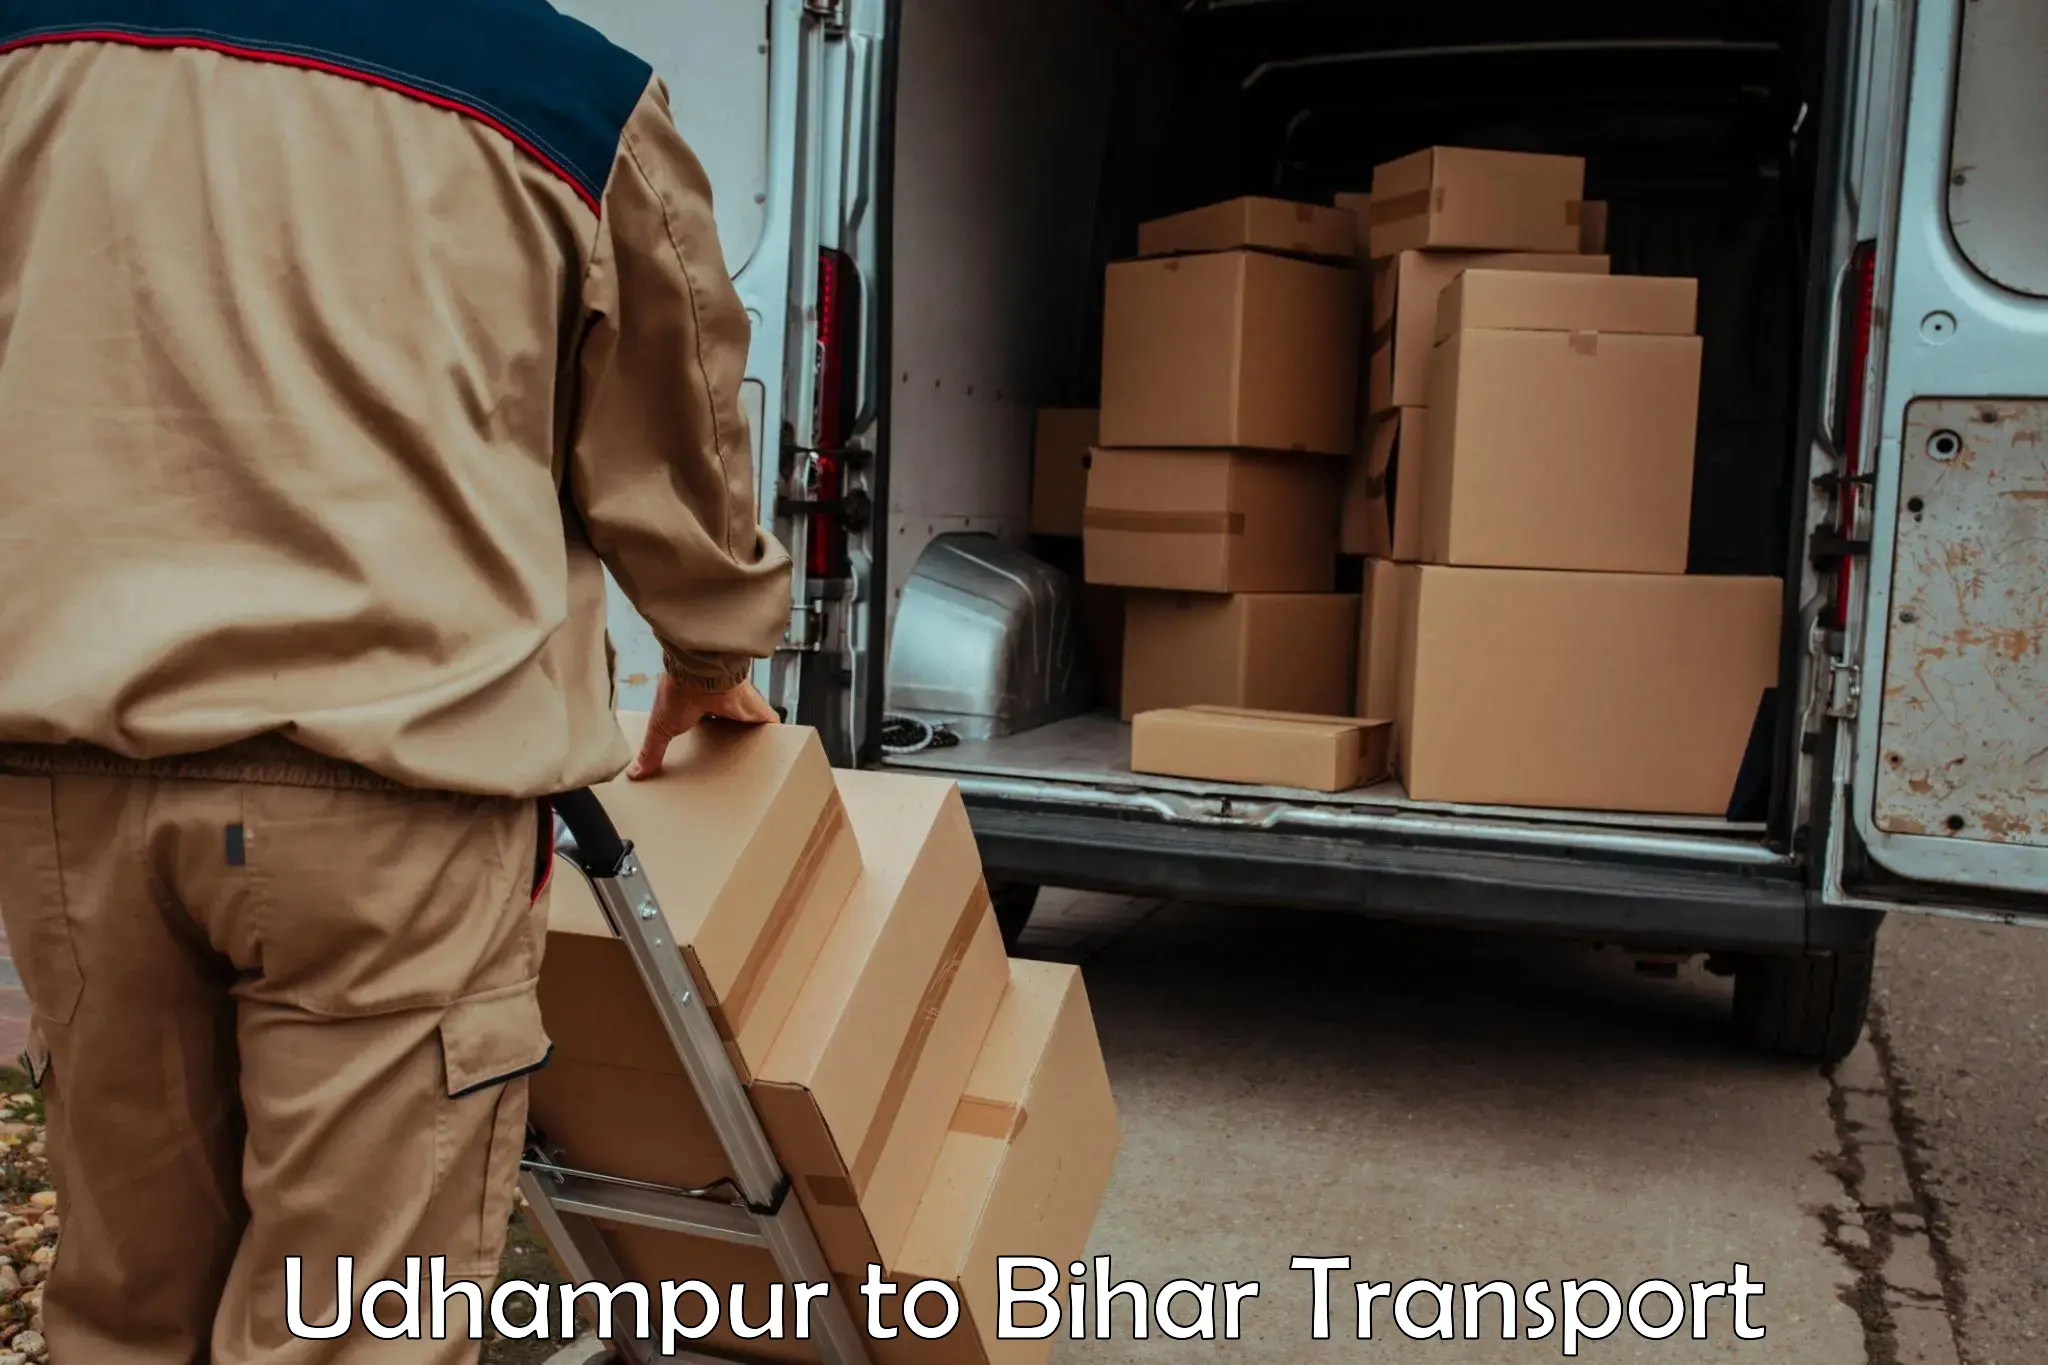 Furniture transport service Udhampur to Bharwara